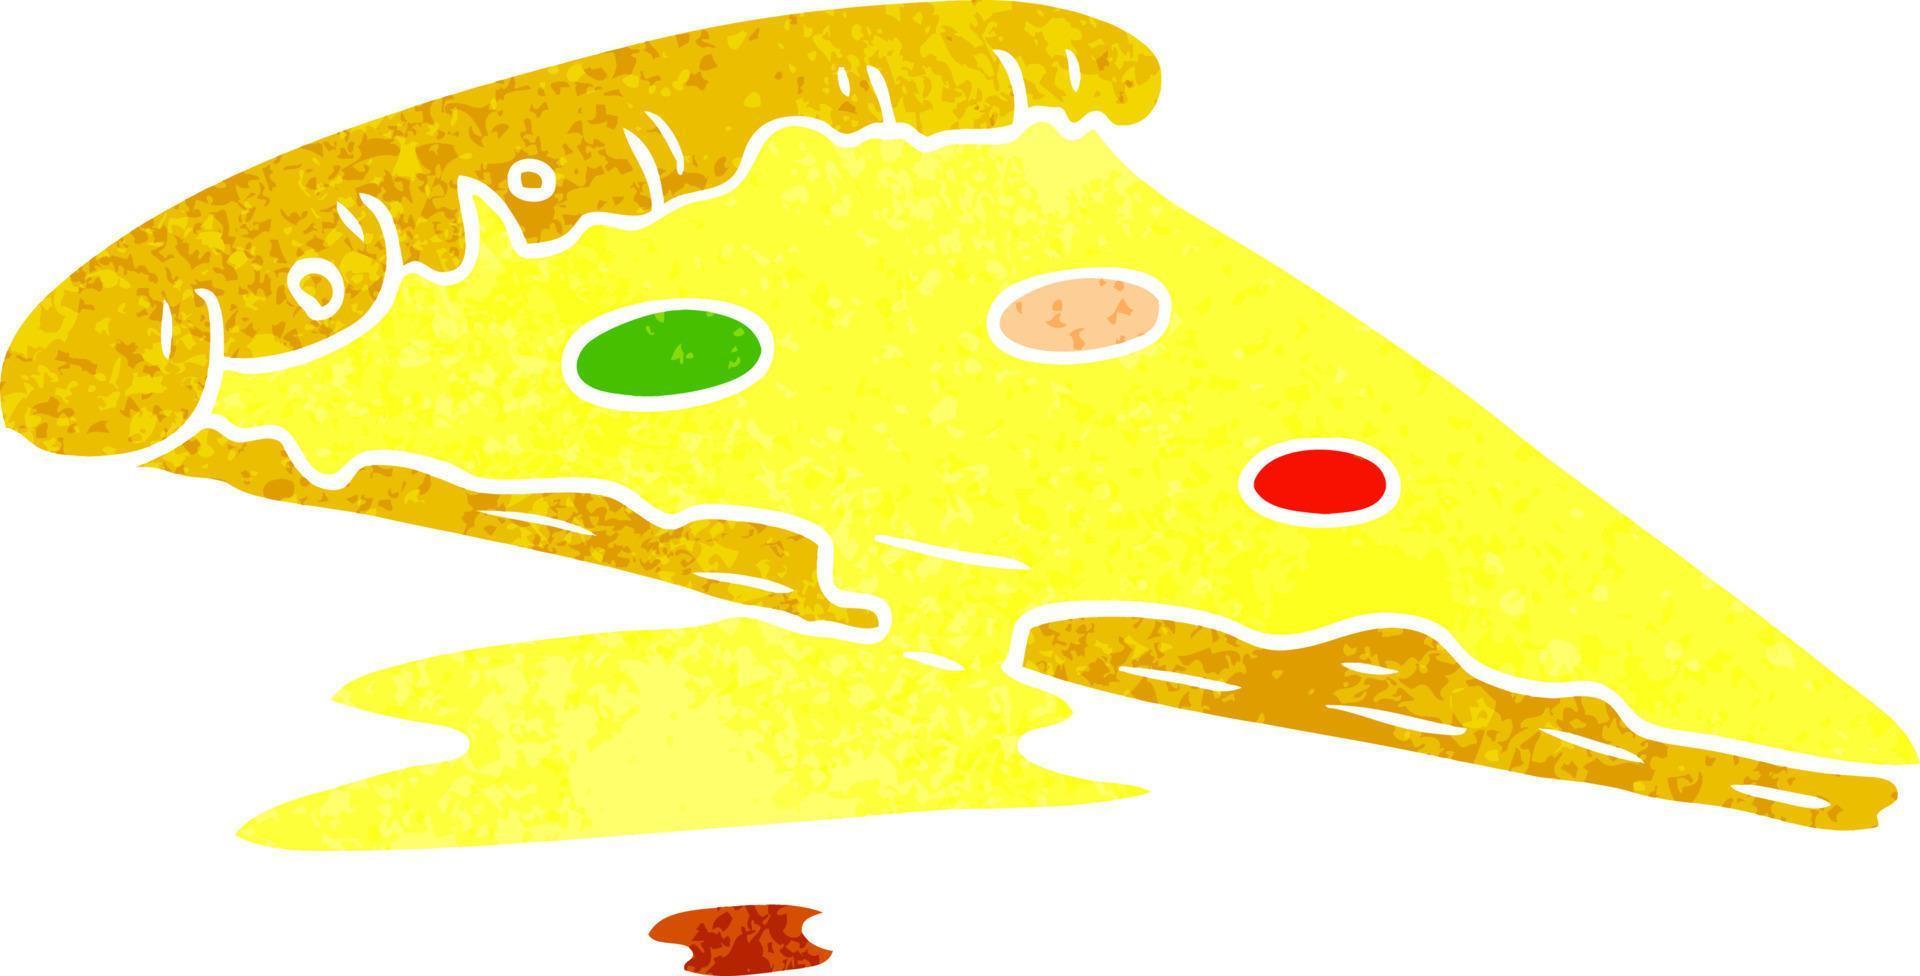 dessin animé rétro doodle d'une tranche de pizza vecteur